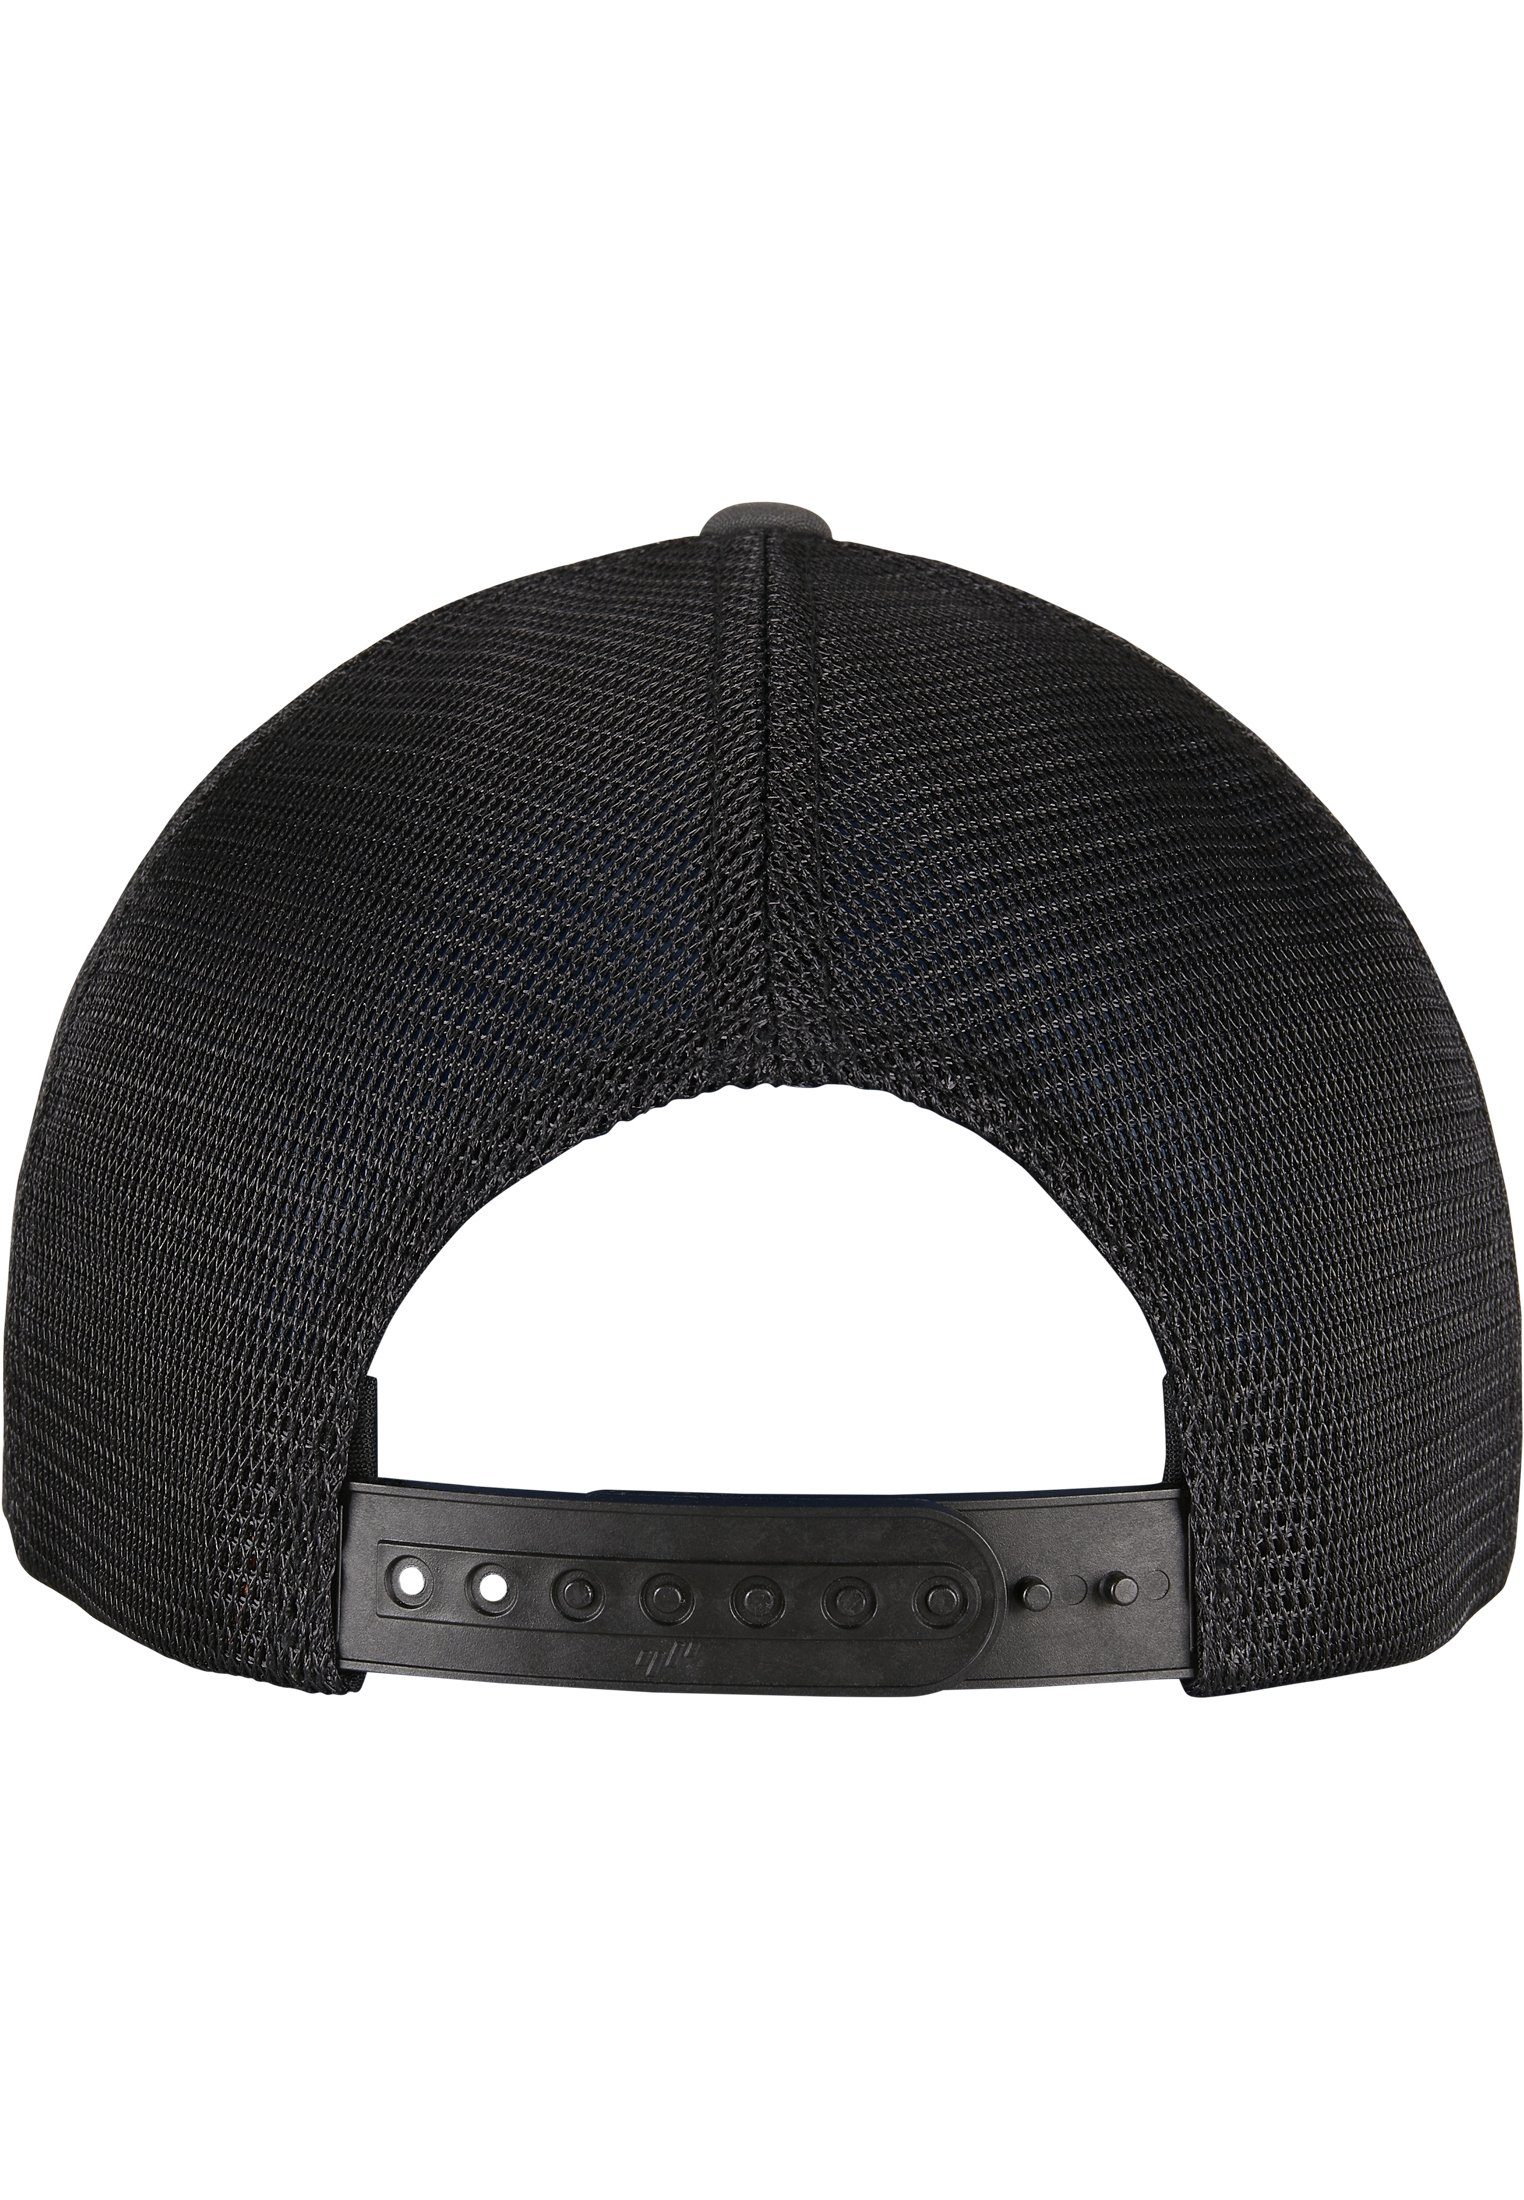 Flexfit Flex Cap Cap Accessoires 2-Tone 360° Omnimesh charcoal/black